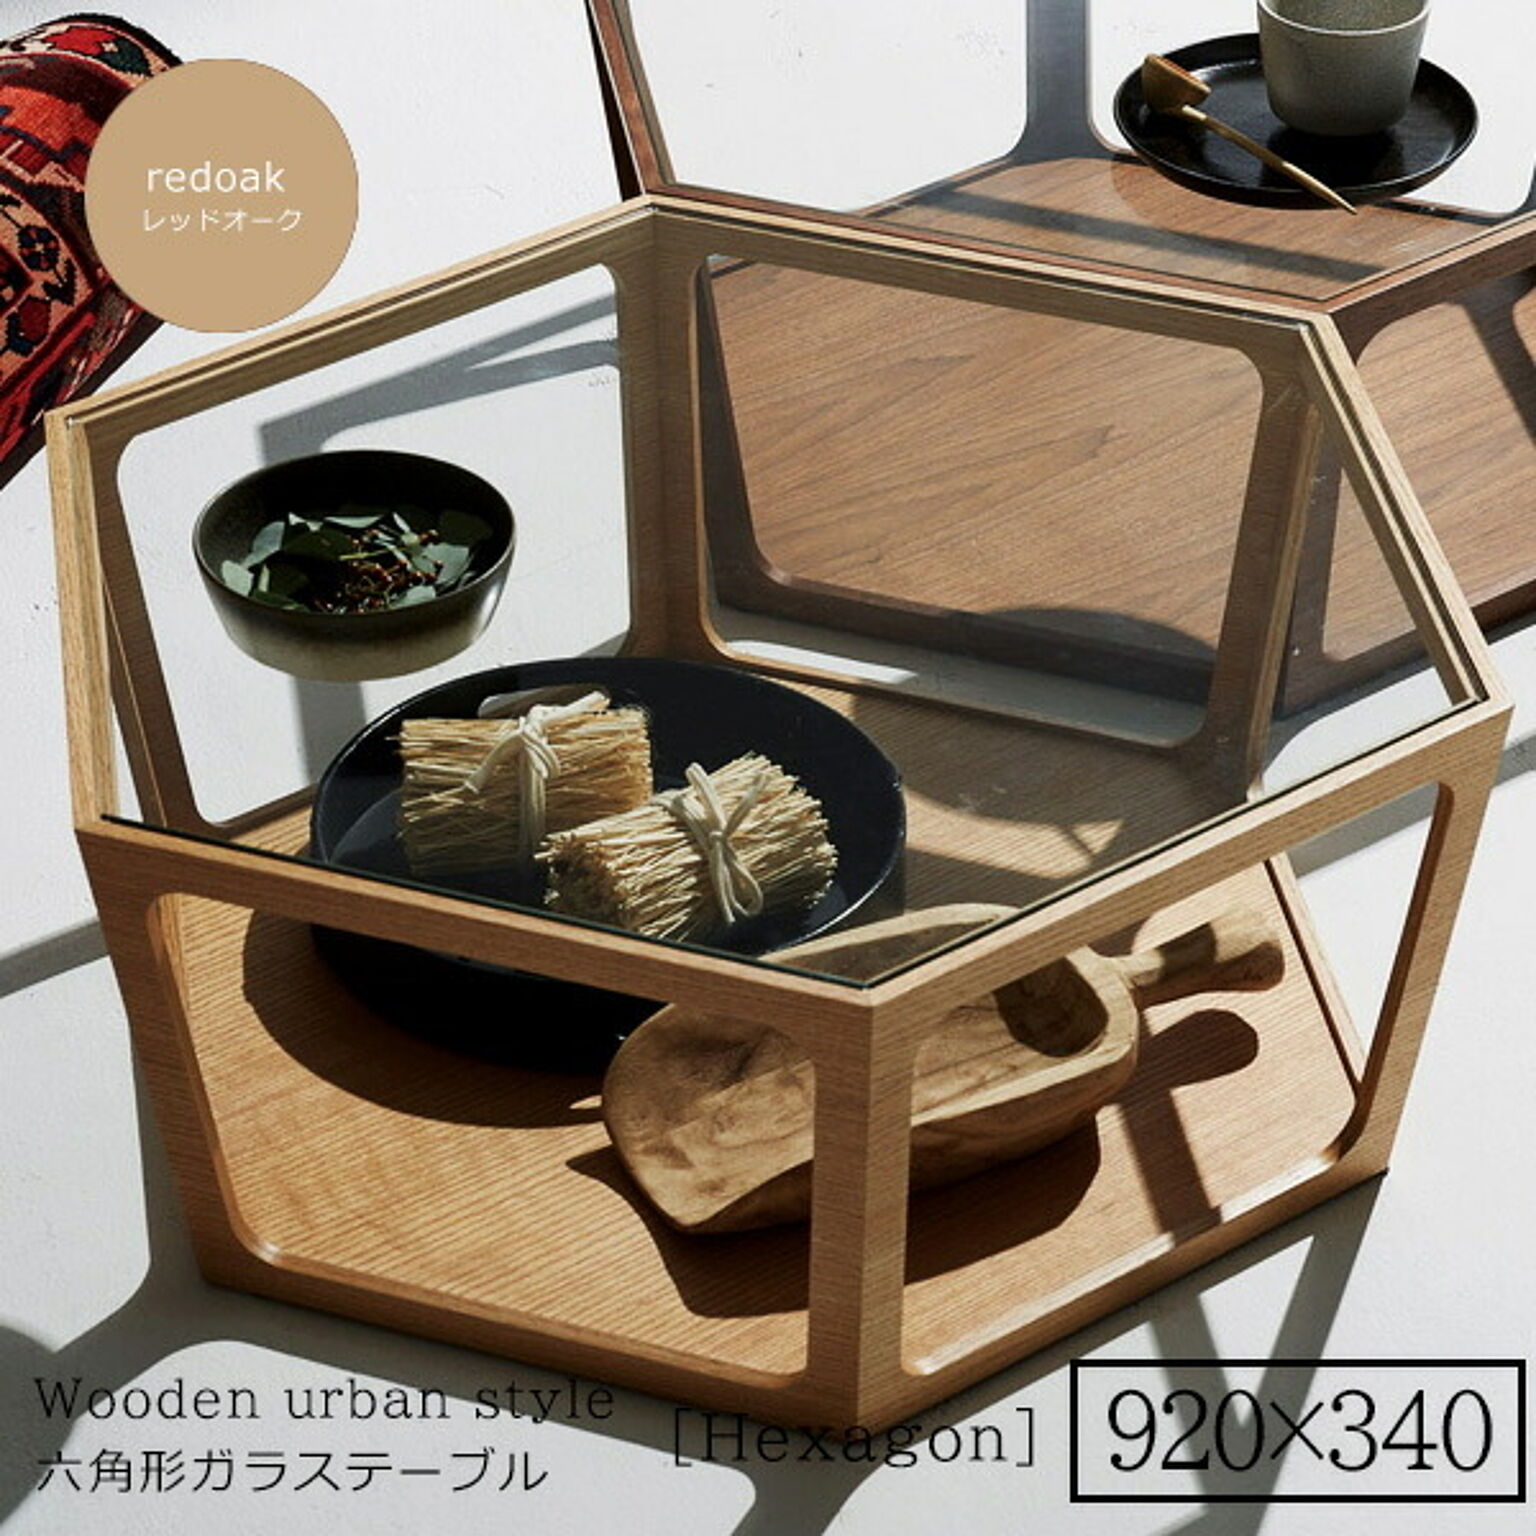 920x340 ： 鏡面仕上げ アーバン リビング 強化ガラステーブル【Hexagon】 ホワイト (アーバン) センターテーブル コーヒーテーブル リビング 